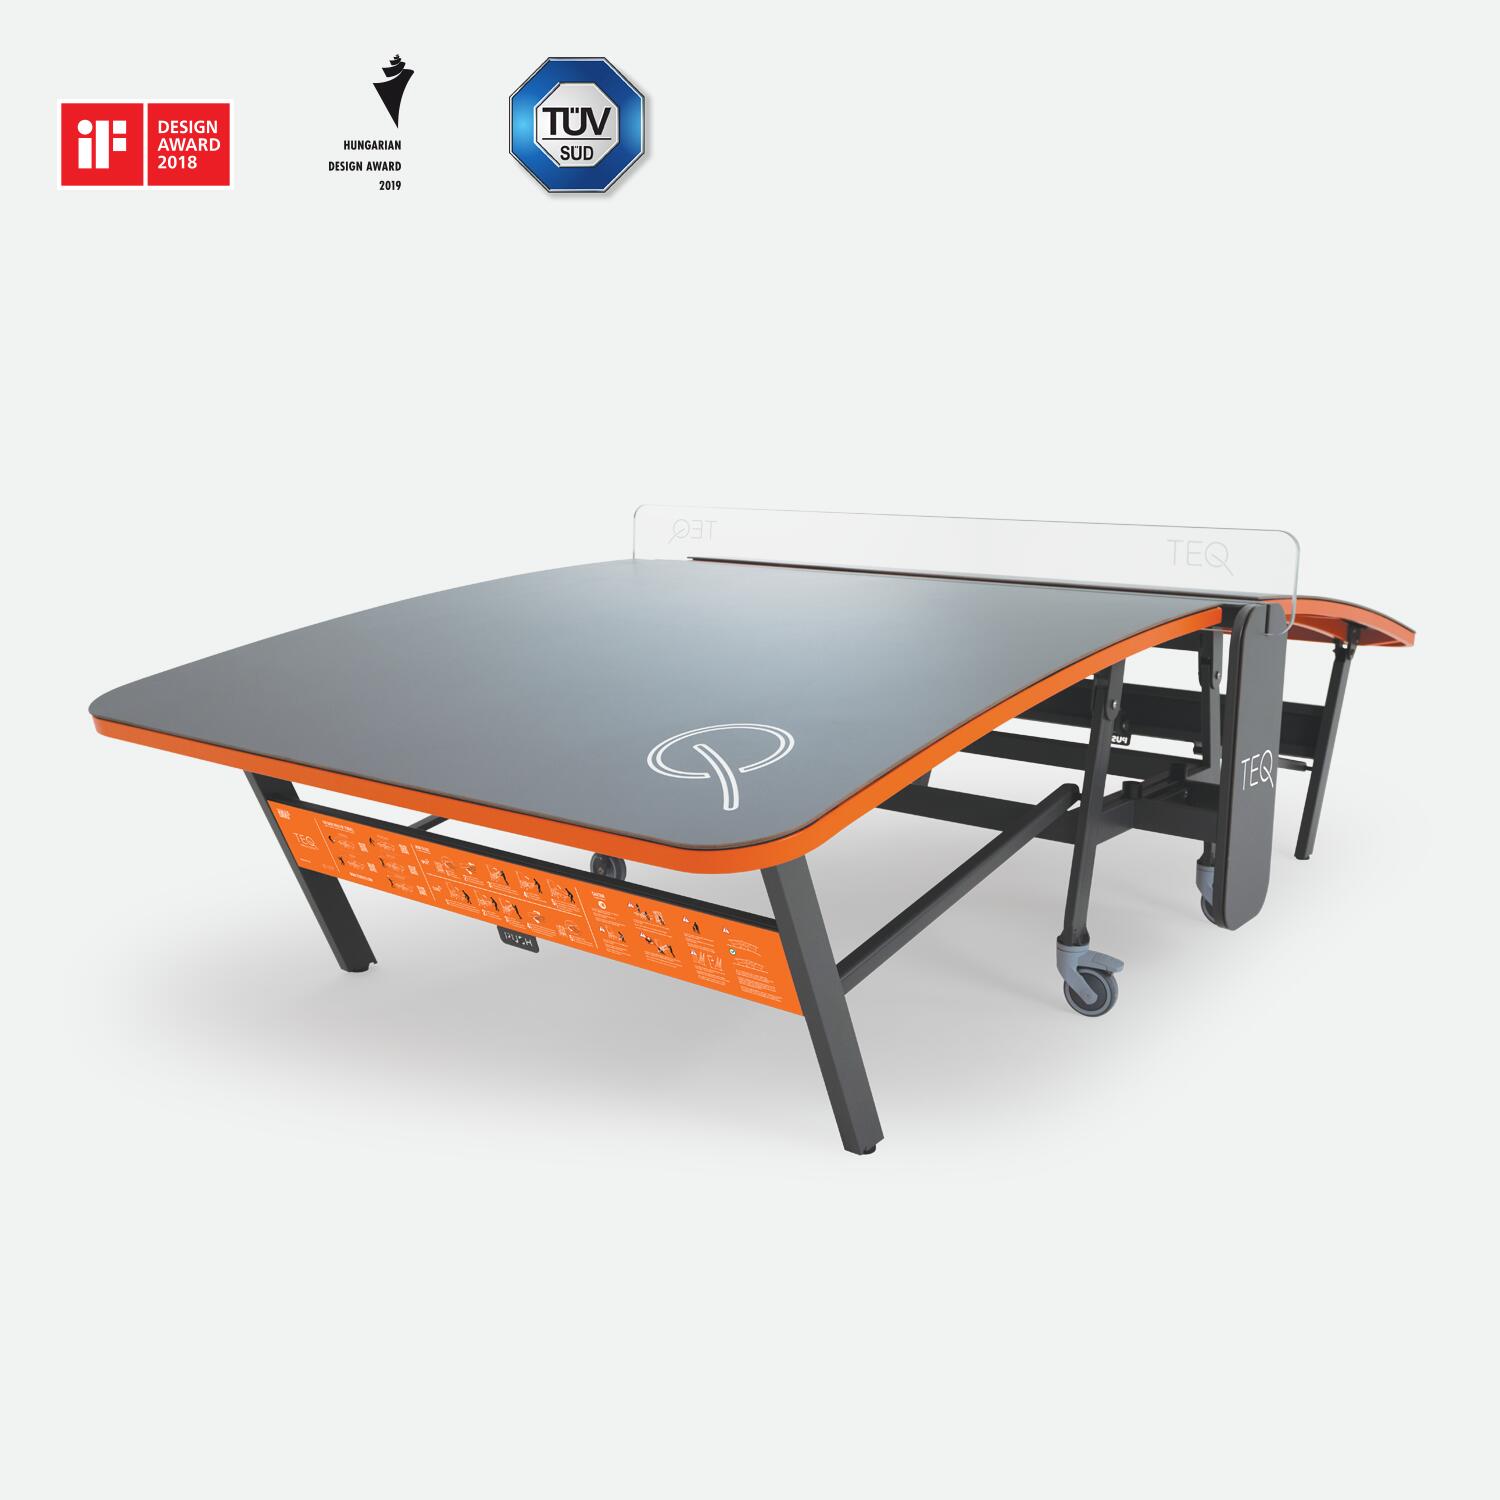 TEQBALL TEQ™ SMART Table - Multifunctional Sports Equipment - Outdoor/Indoor